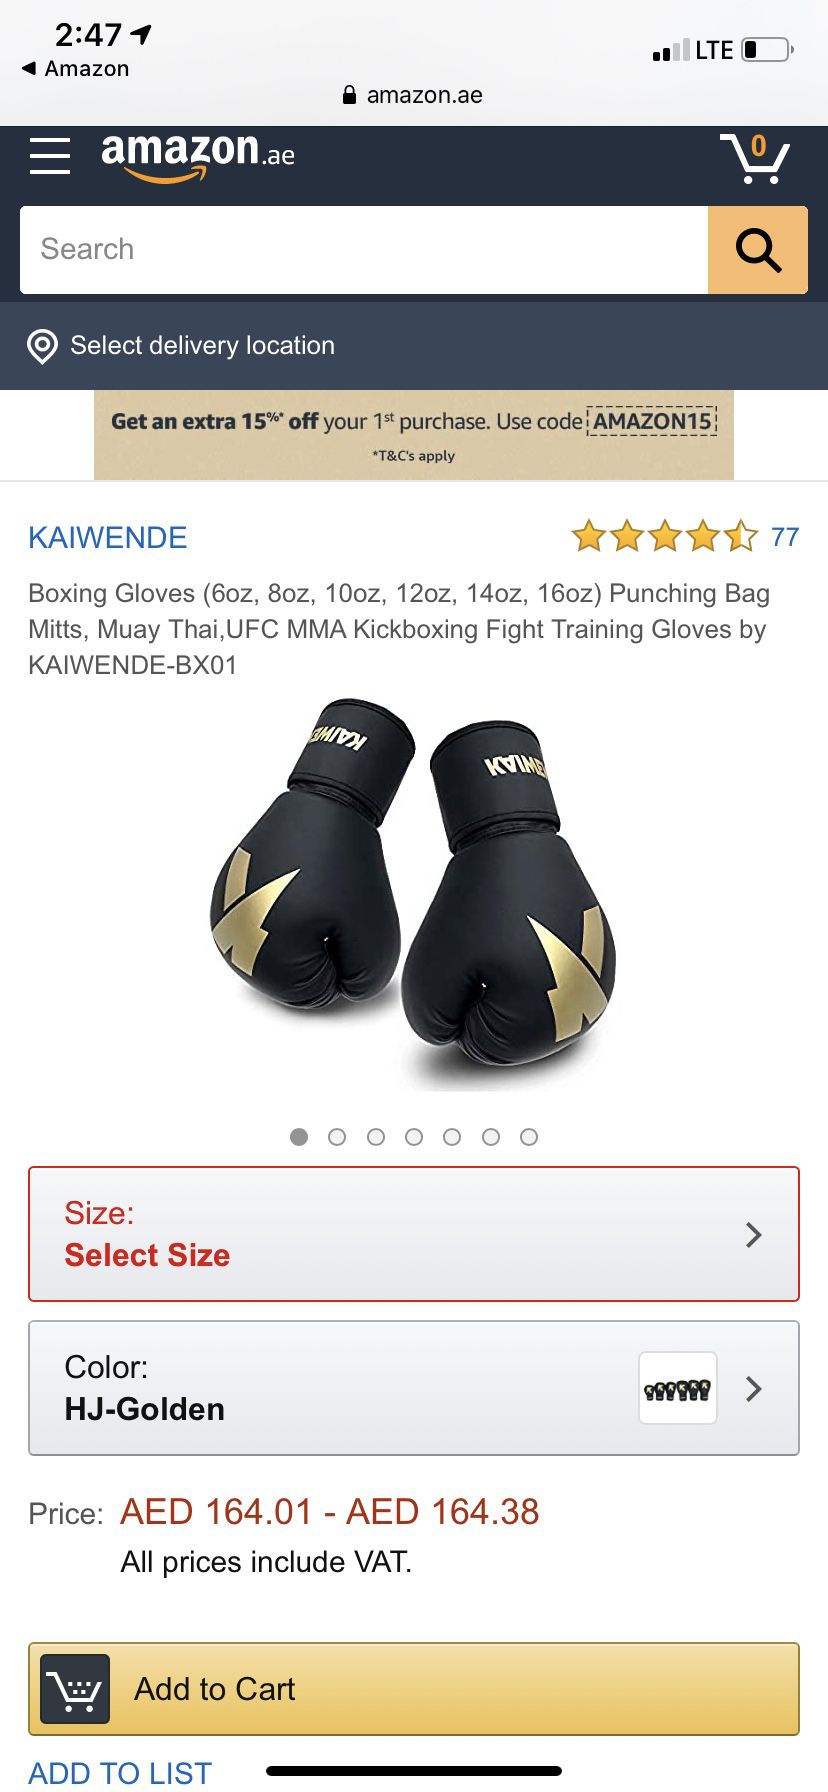 Kaiwende boxing gloves